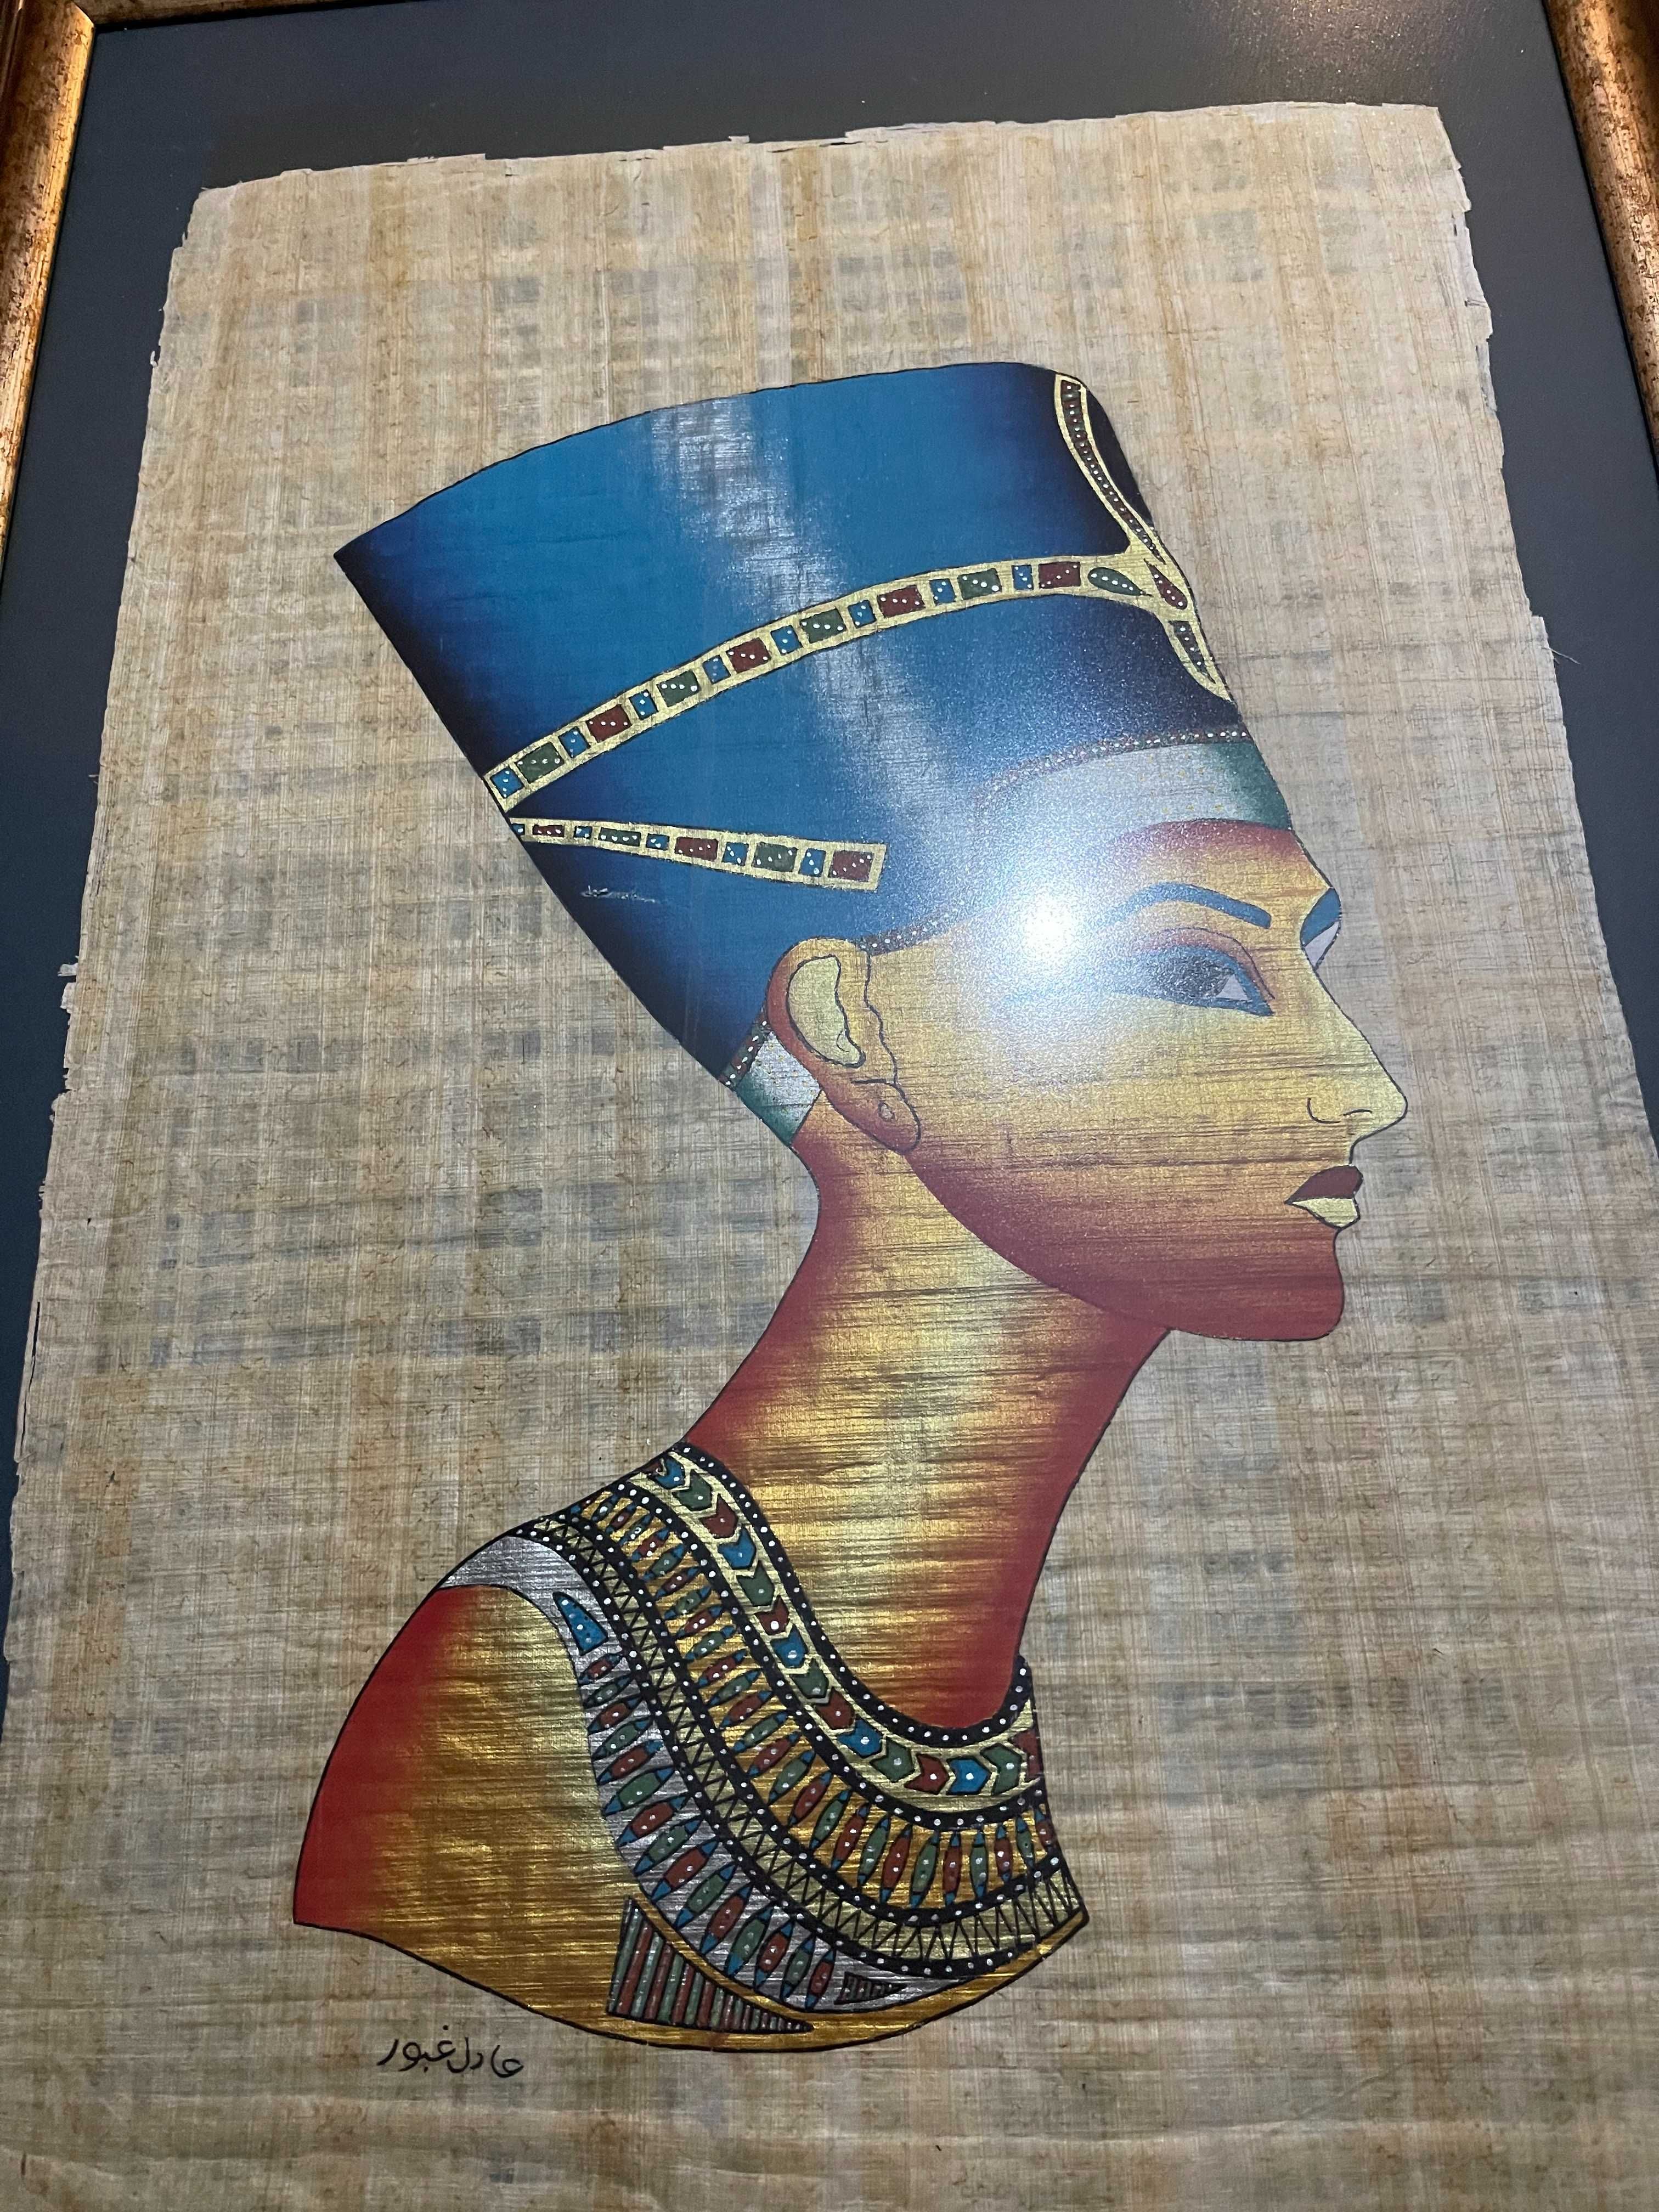 Картина на папирусе "Нефертити" из Египта